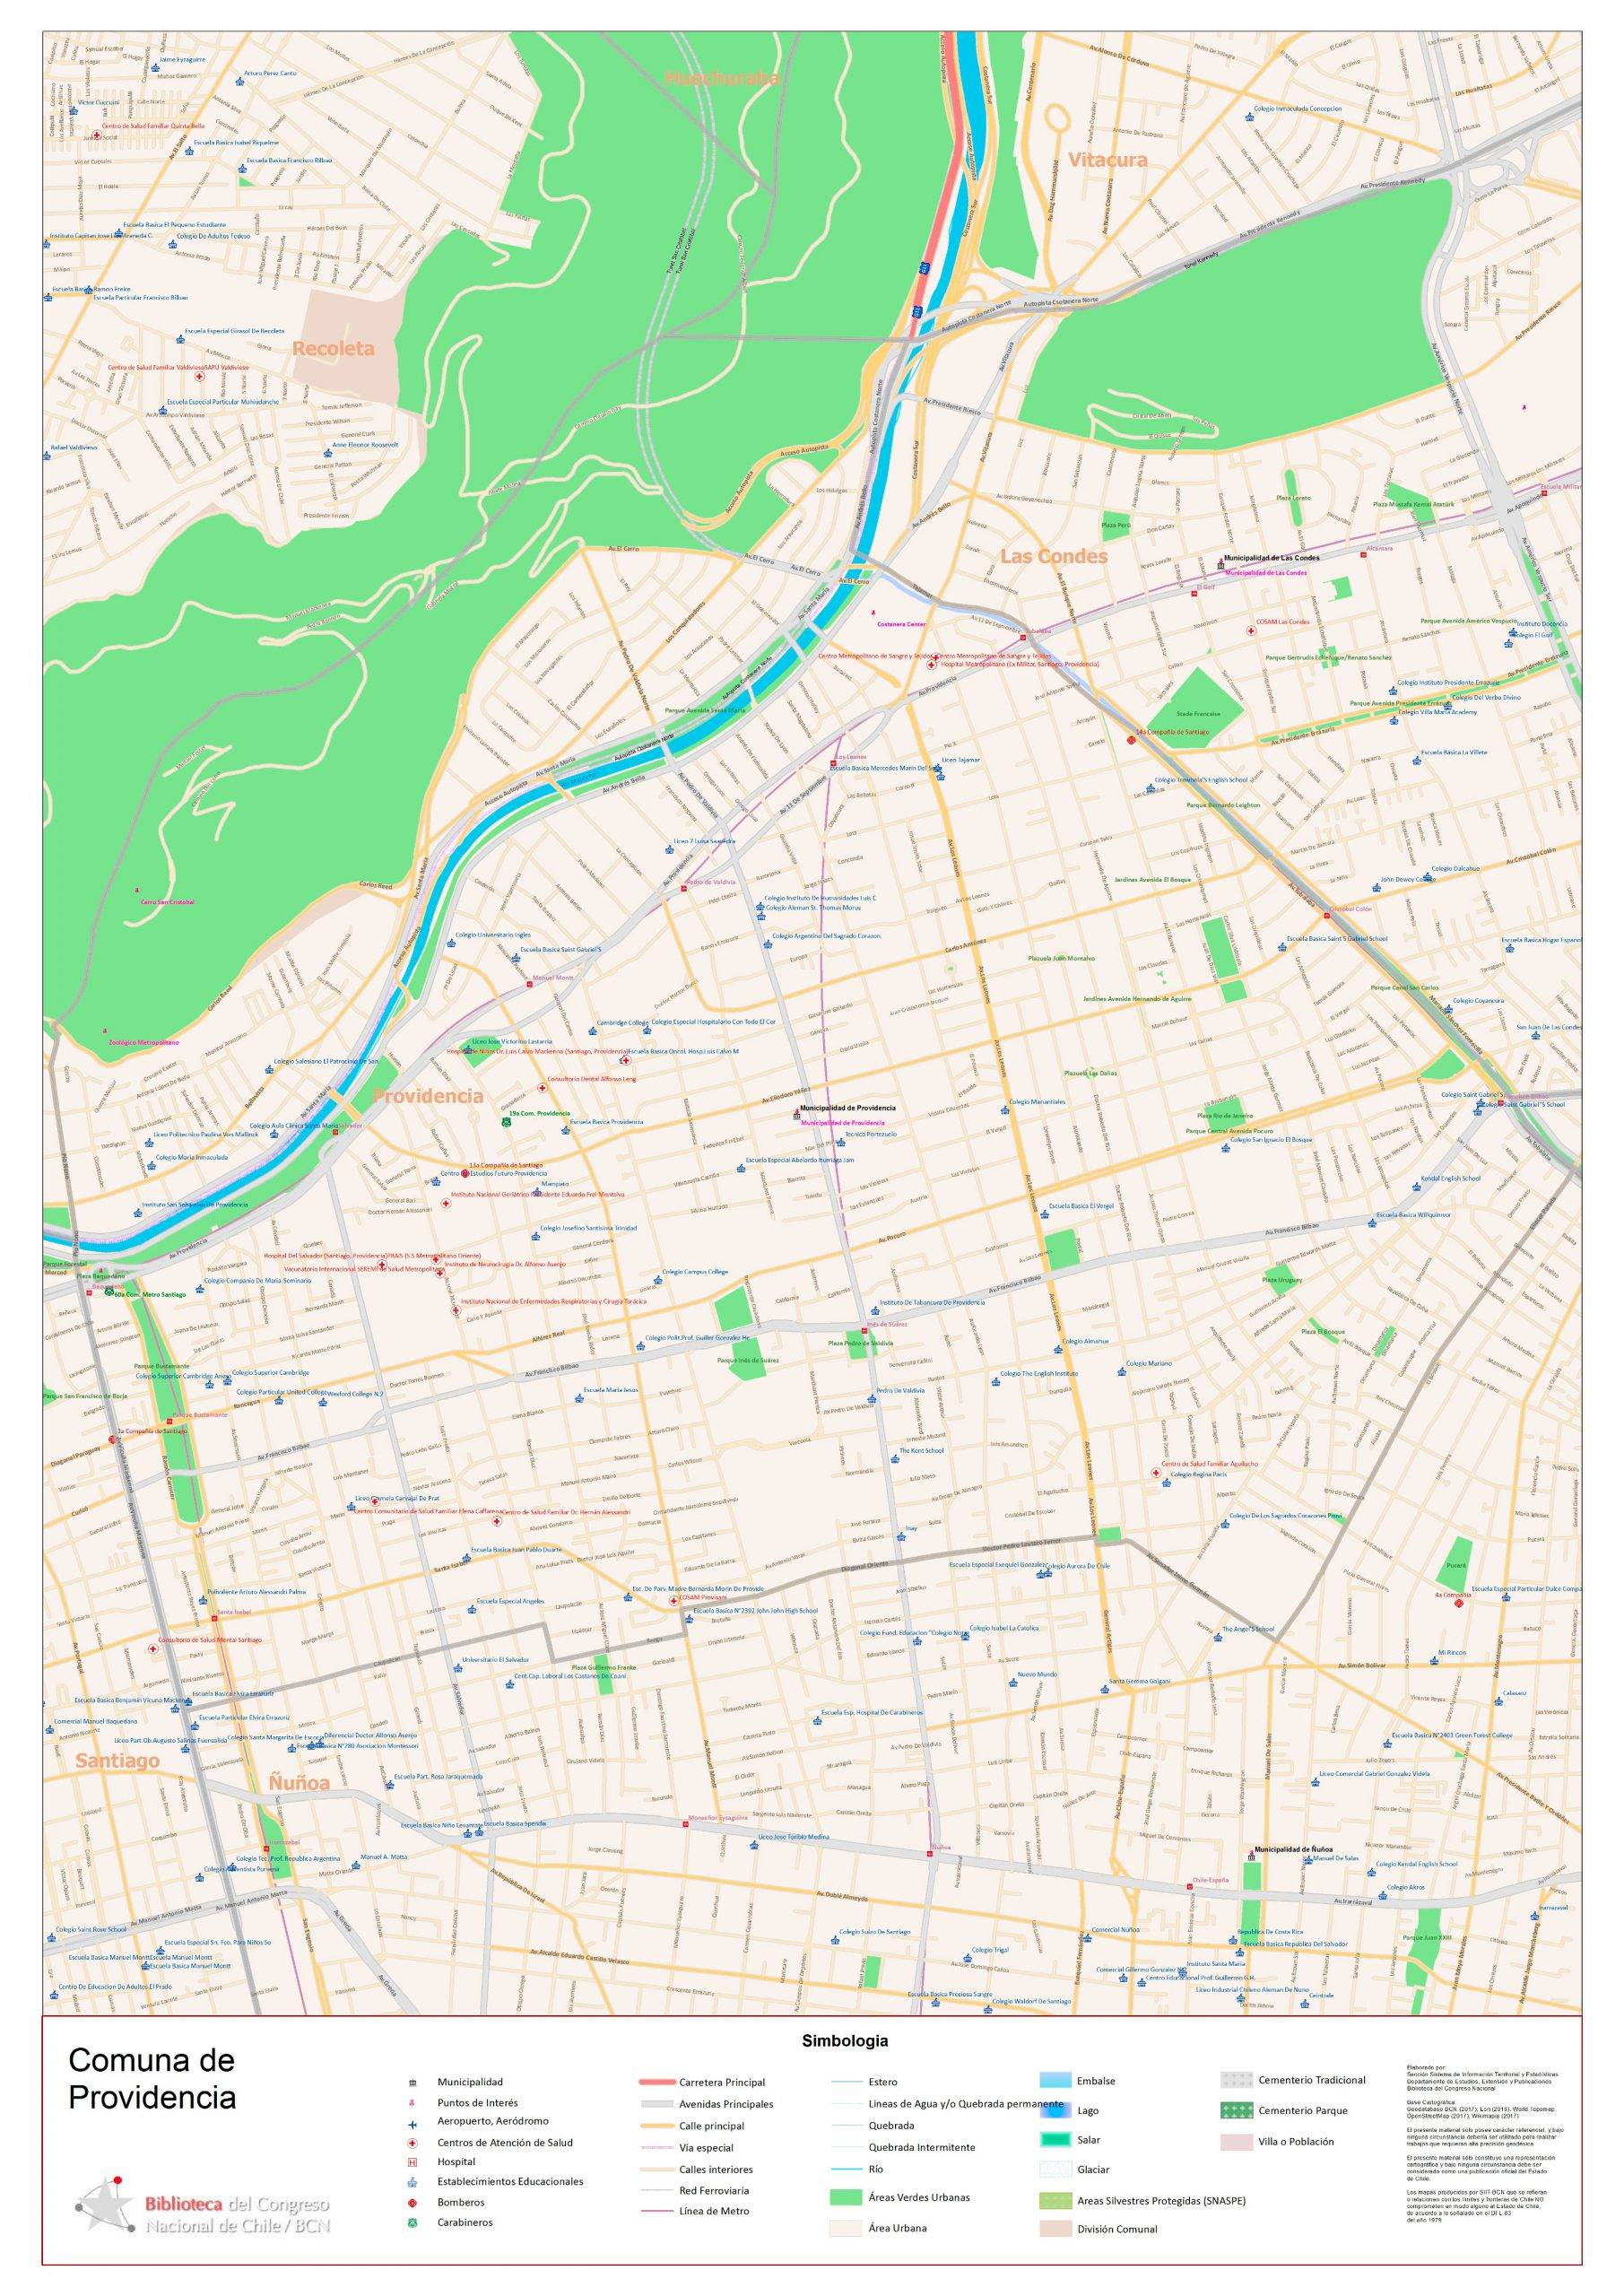 Mapa de la comuna de Providencia en Santiago de Chile